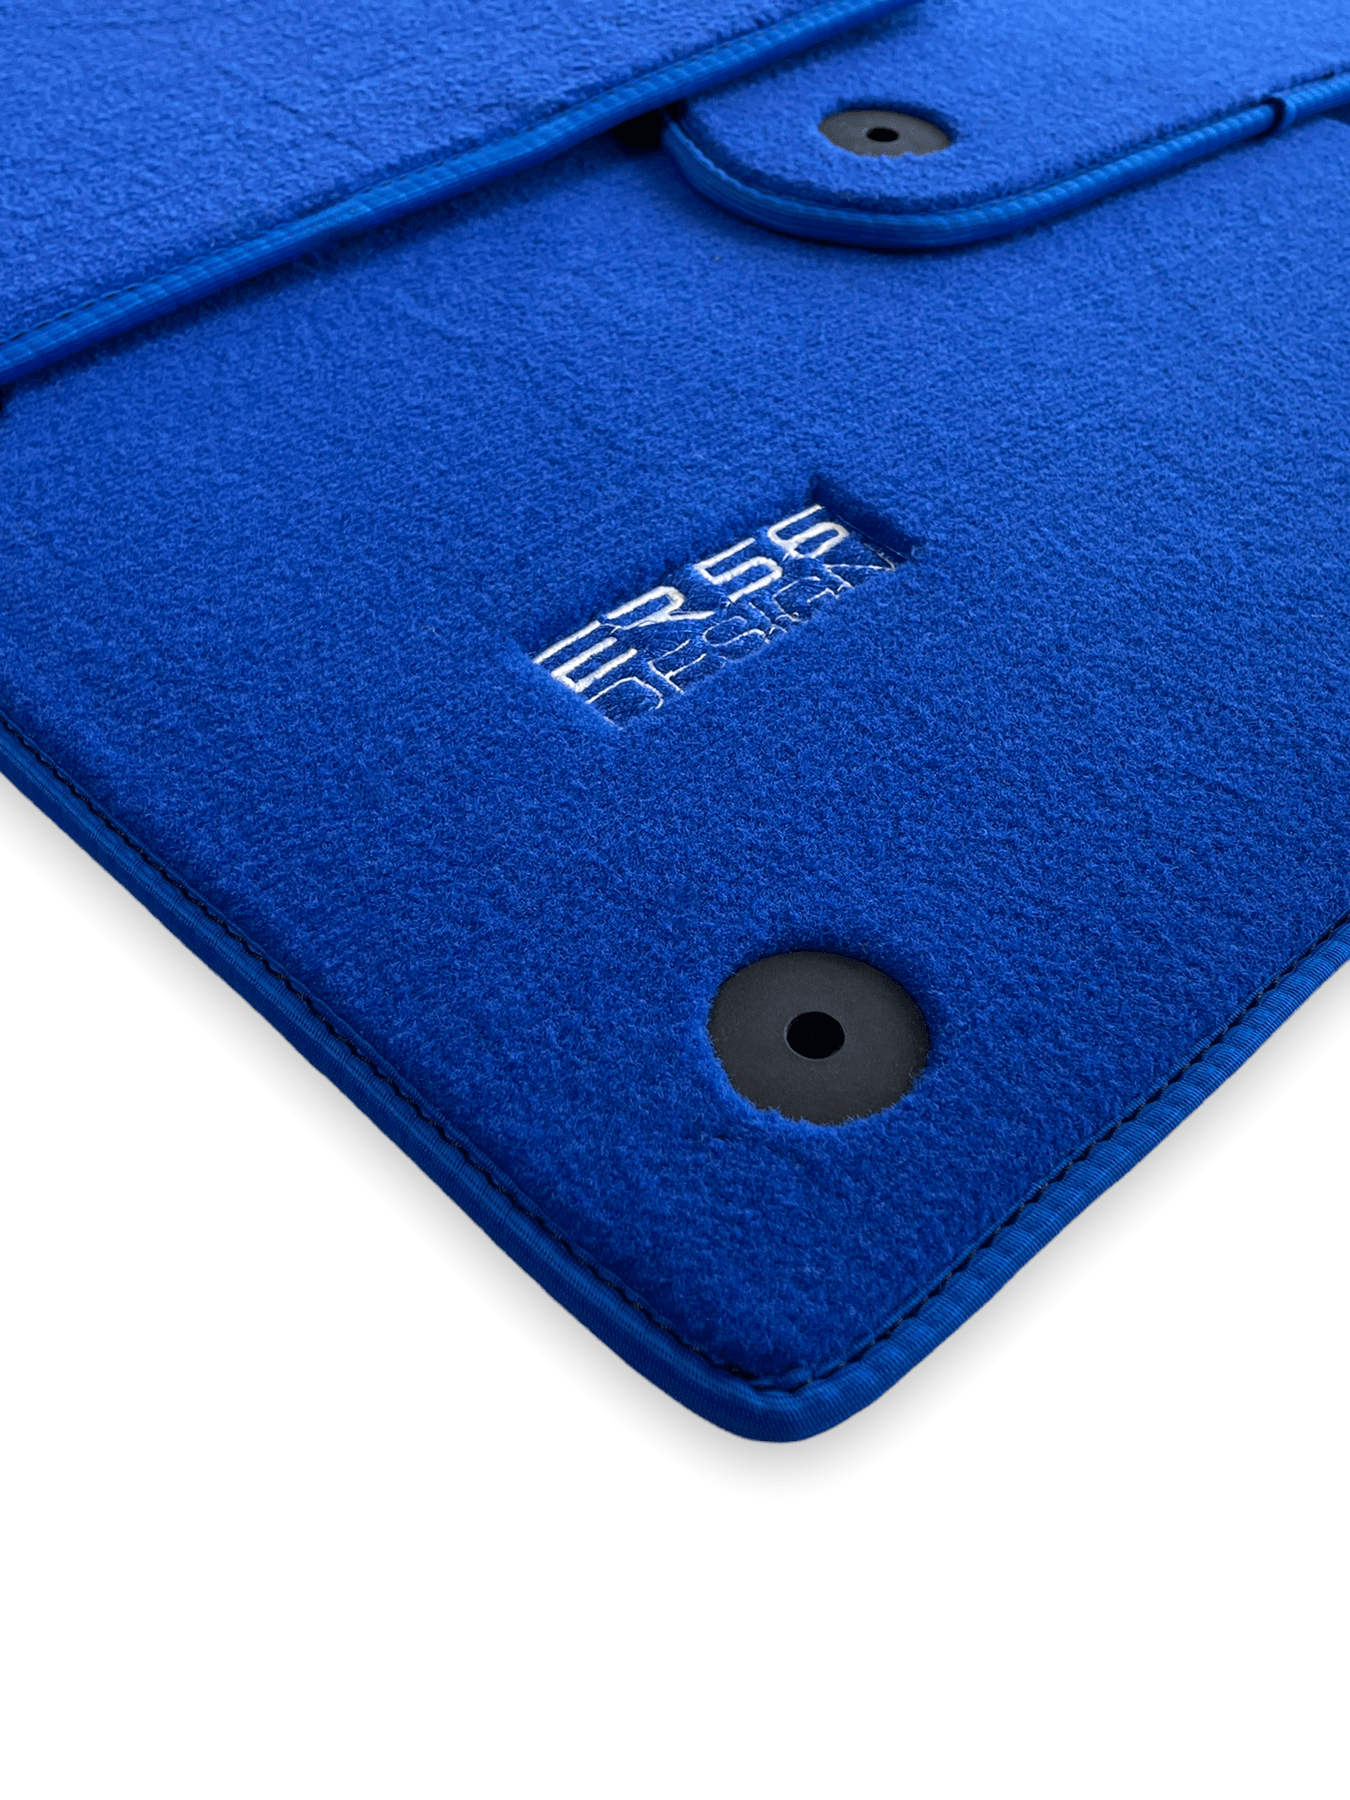 Blue Floor Mats for Audi A6 - C7 Avant (2011-2018) | ER56 Design